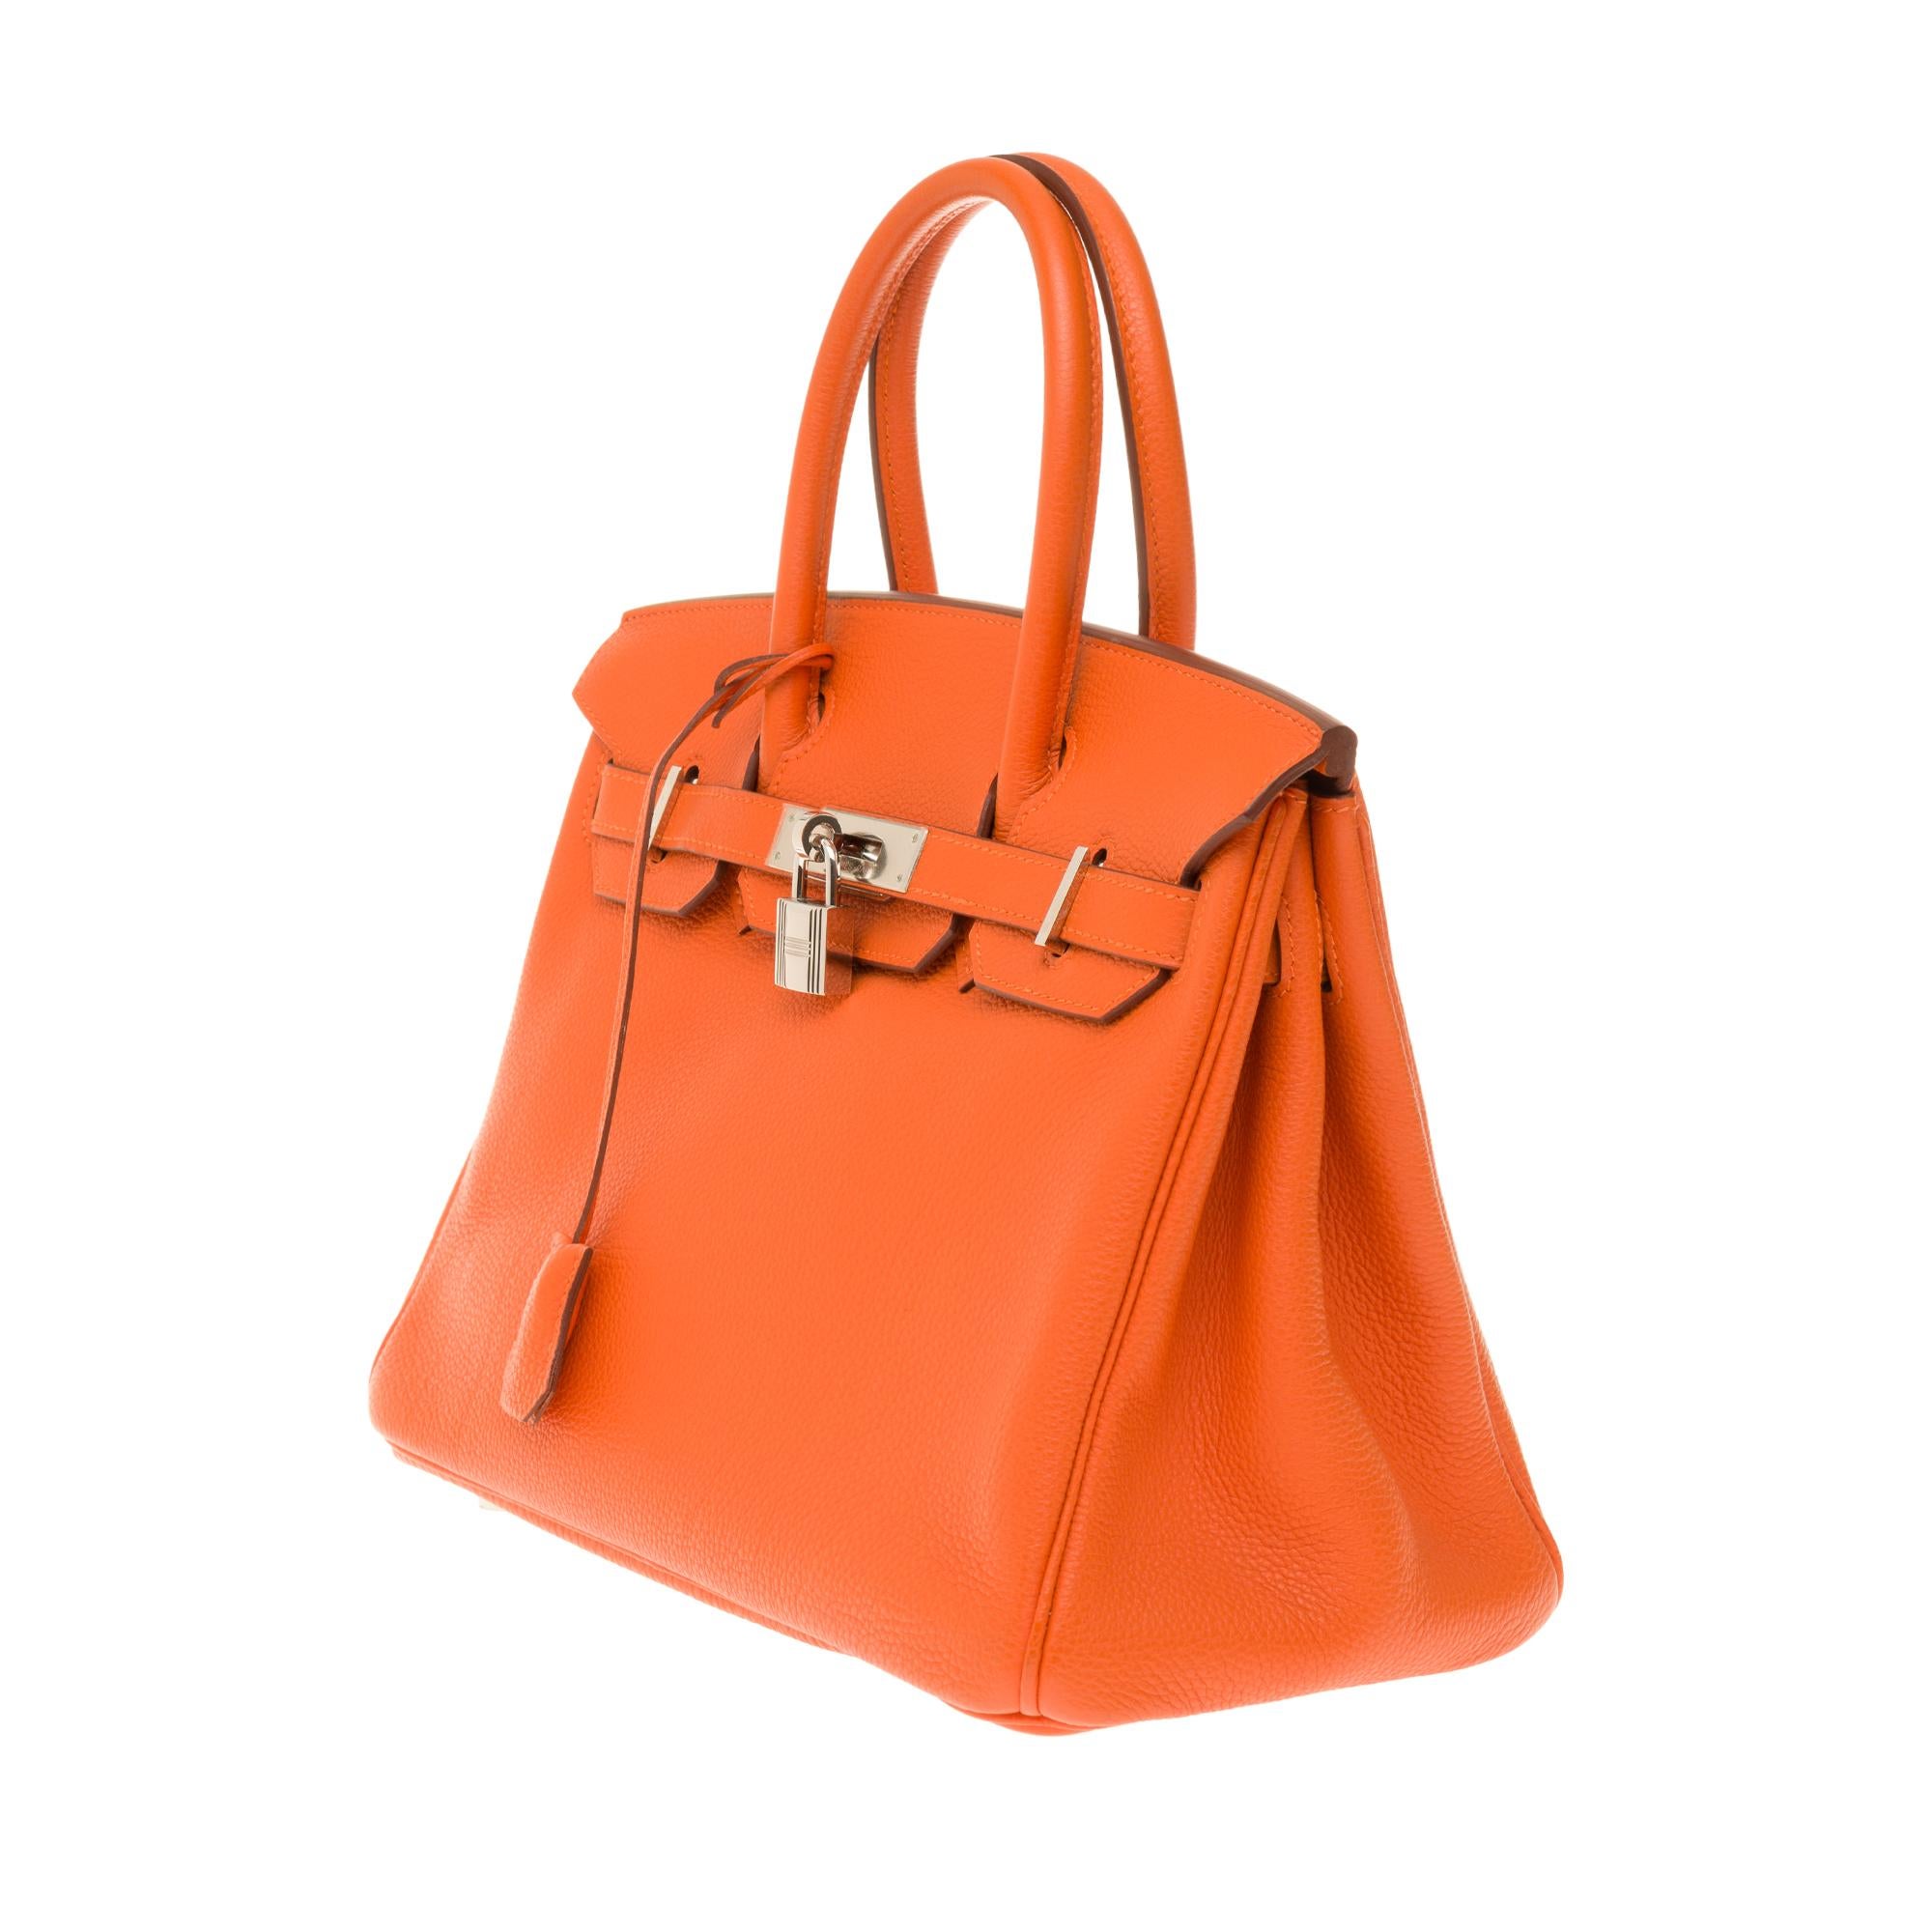 Red Hermès Birkin 30 handbag in Togo orange leather, PHW, new condition 